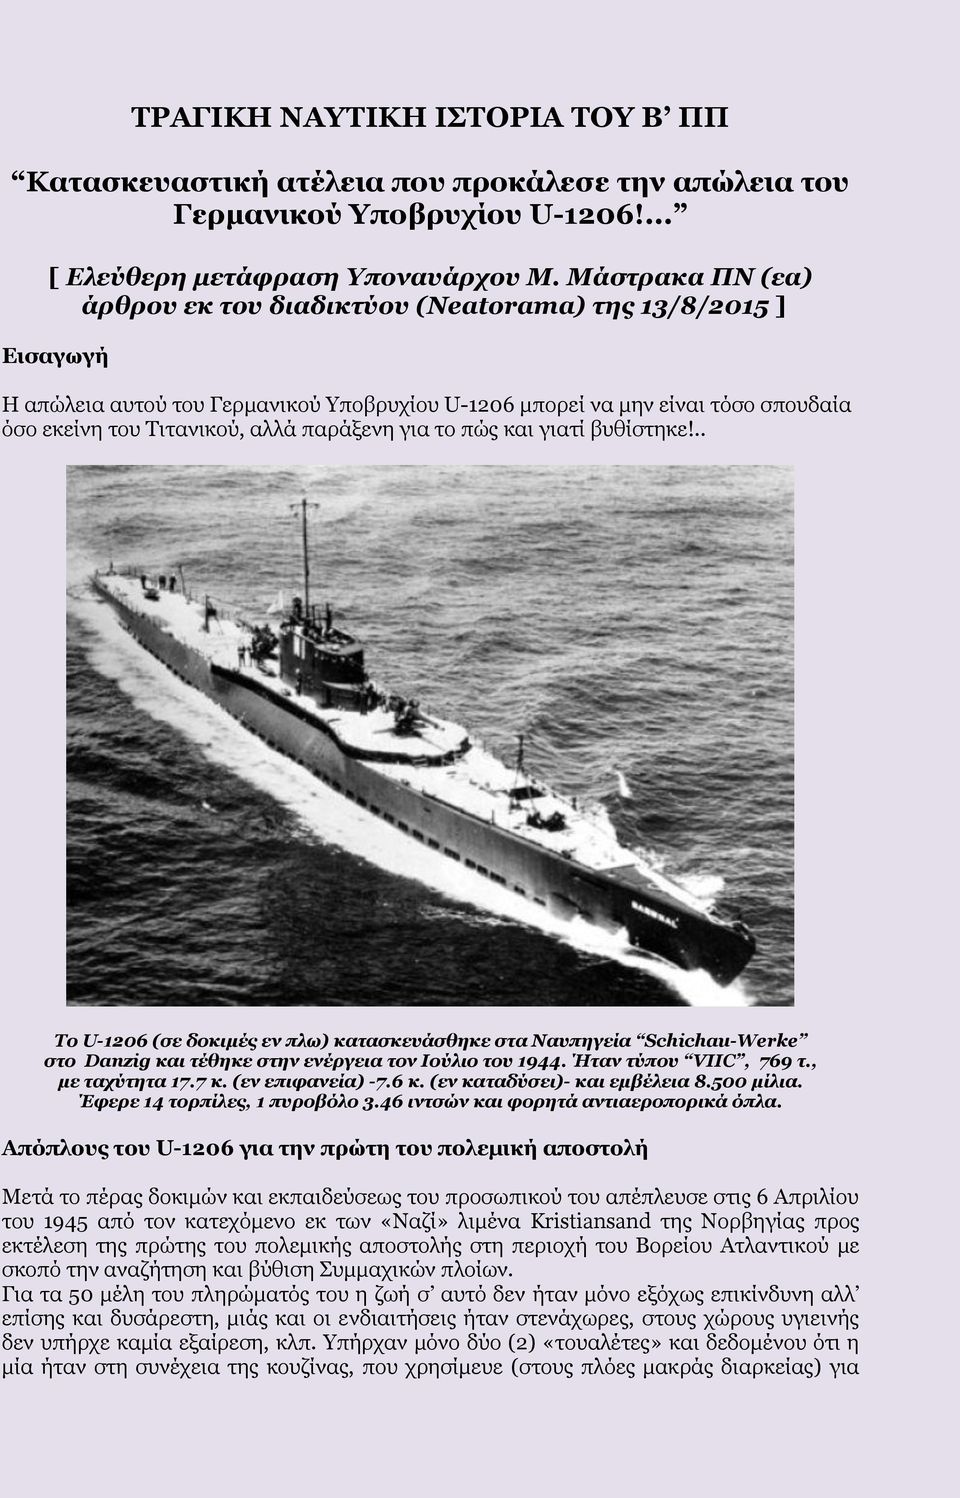 παράξενη για το πώς και γιατί βυθίστηκε!.. Το U-1206 (σε δοκιμές εν πλω) κατασκευάσθηκε στα Ναυπηγεία Schichau-Werke στο Danzig και τέθηκε στην ενέργεια τον Ιούλιο του 1944. Ήταν τύπου VIIC, 769 τ.